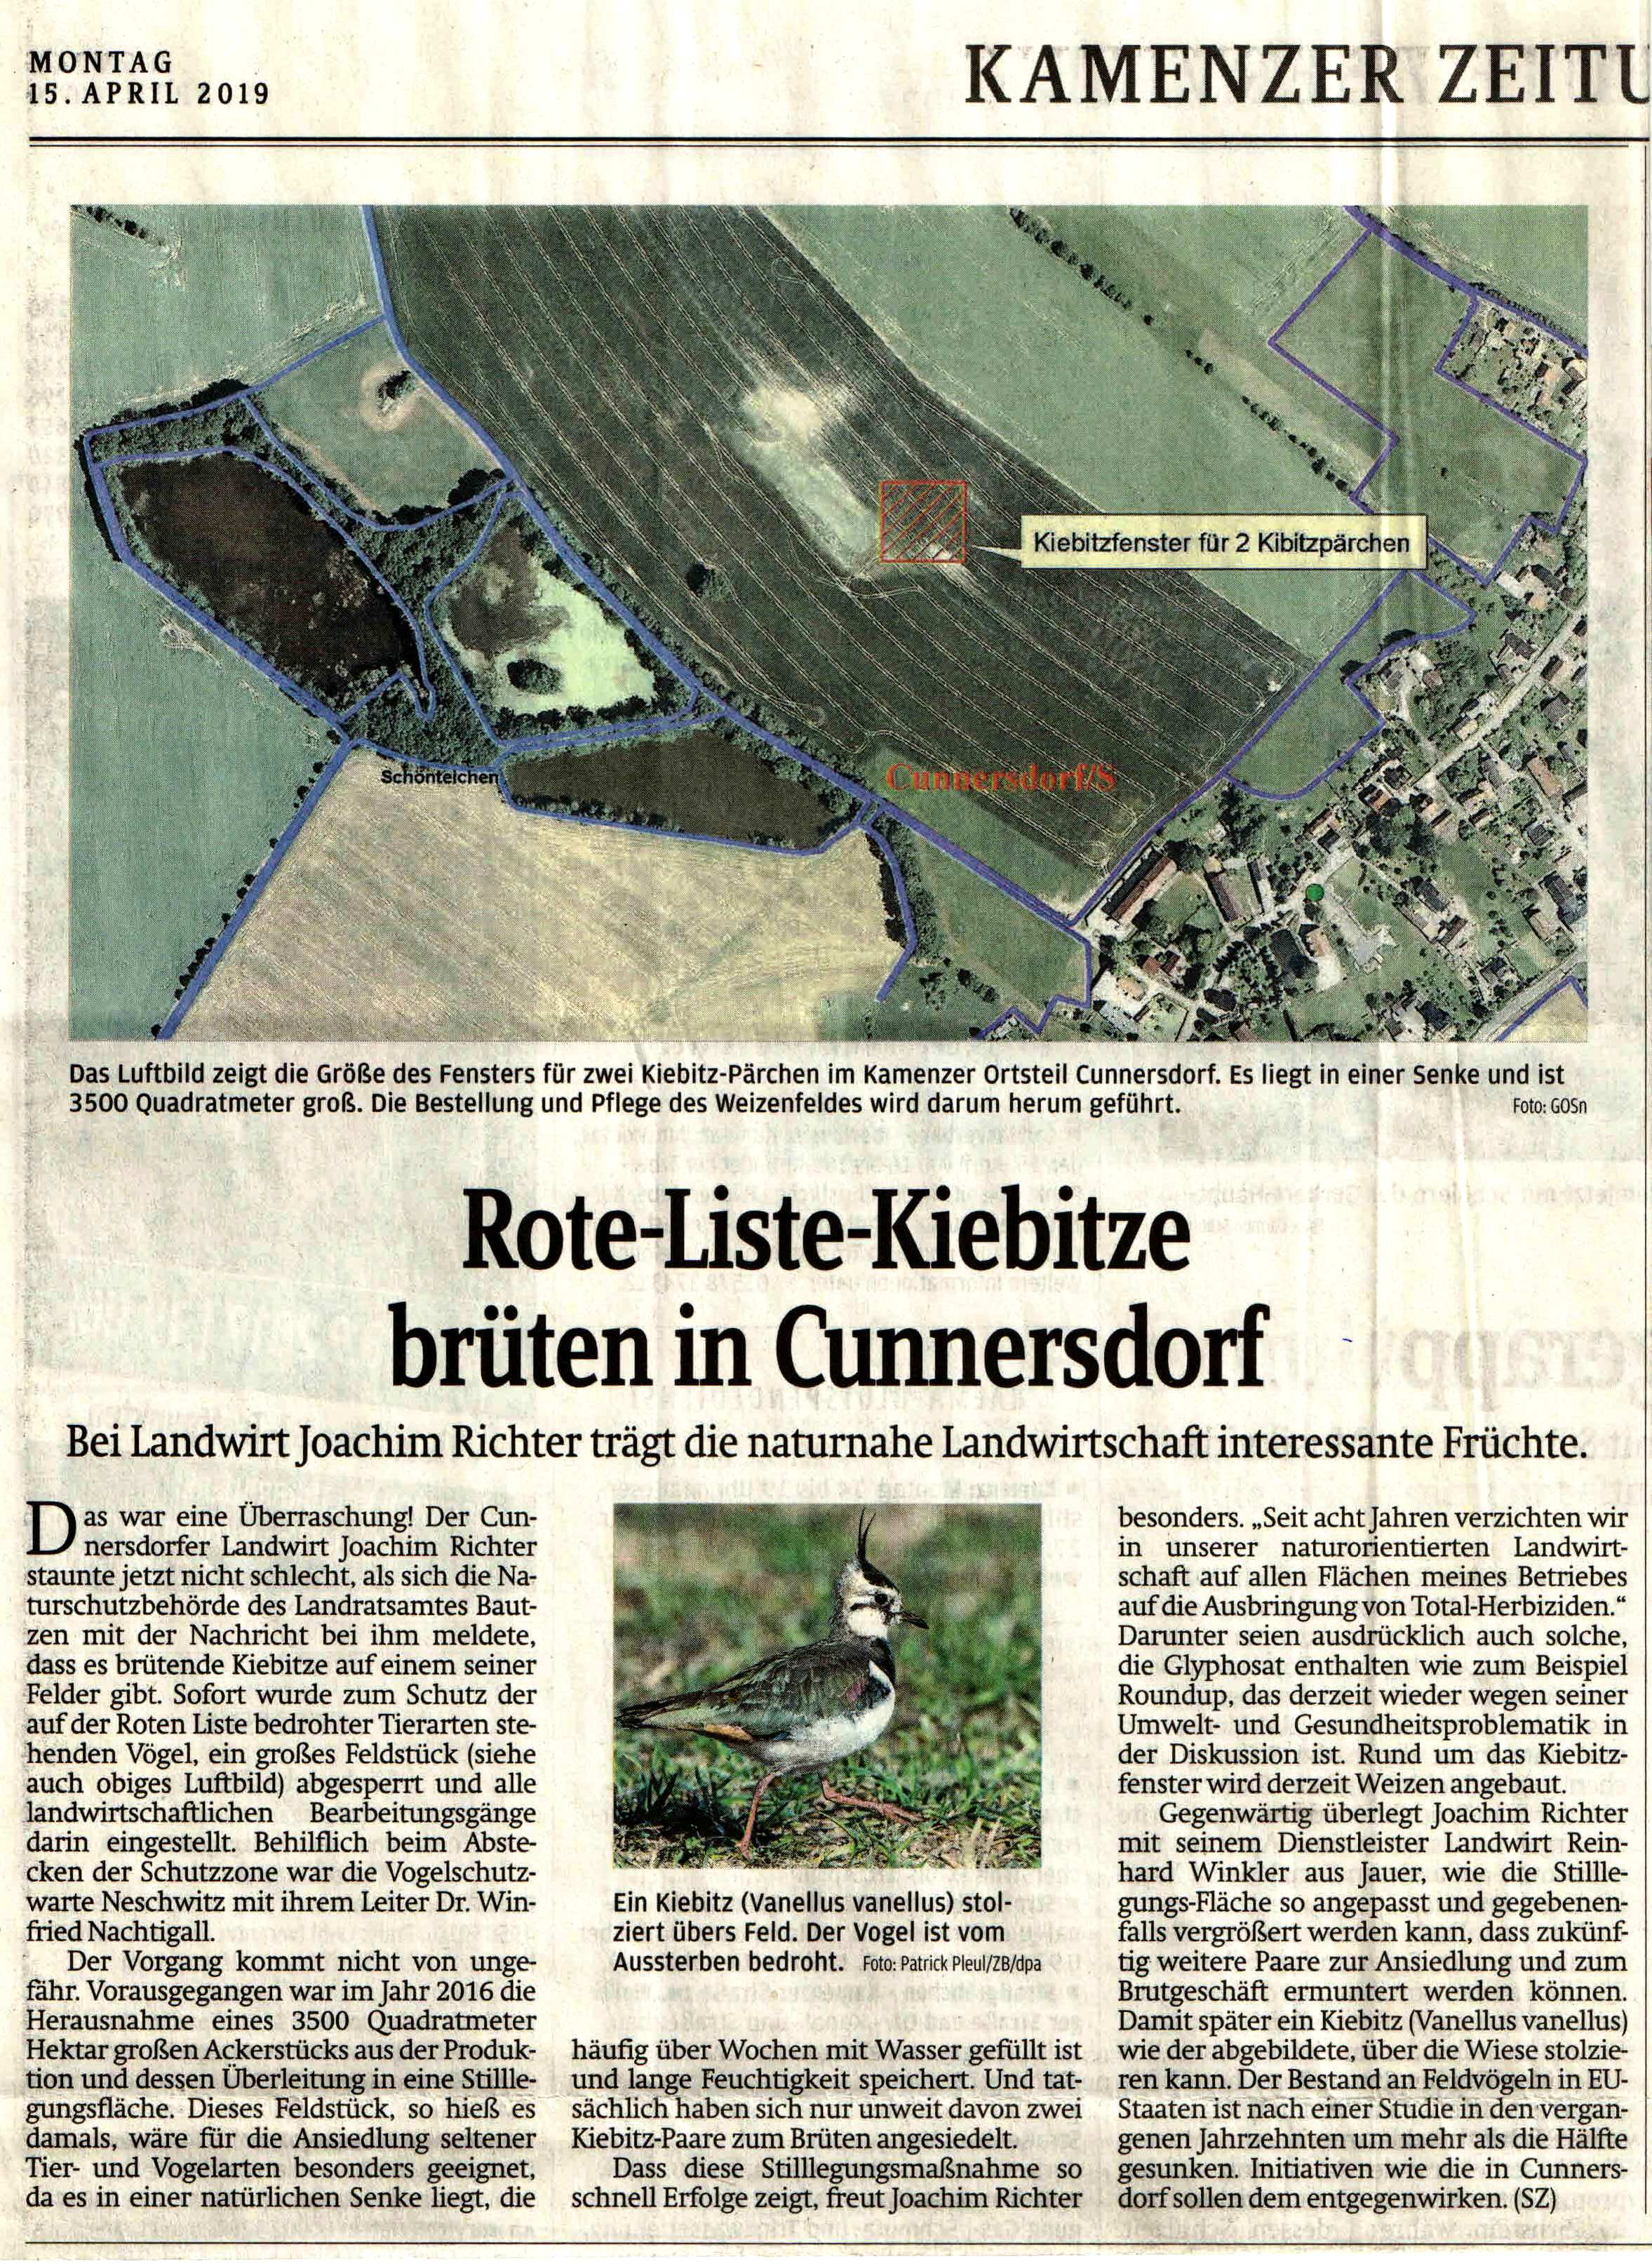 Familienchronik Richter in Sachsen: Landwirt Joachim Richter freut sich über Kiebitz -Brutpaarre, die auf der Roten-Liste stehen, in Cunnersdorf bei Kamenz.